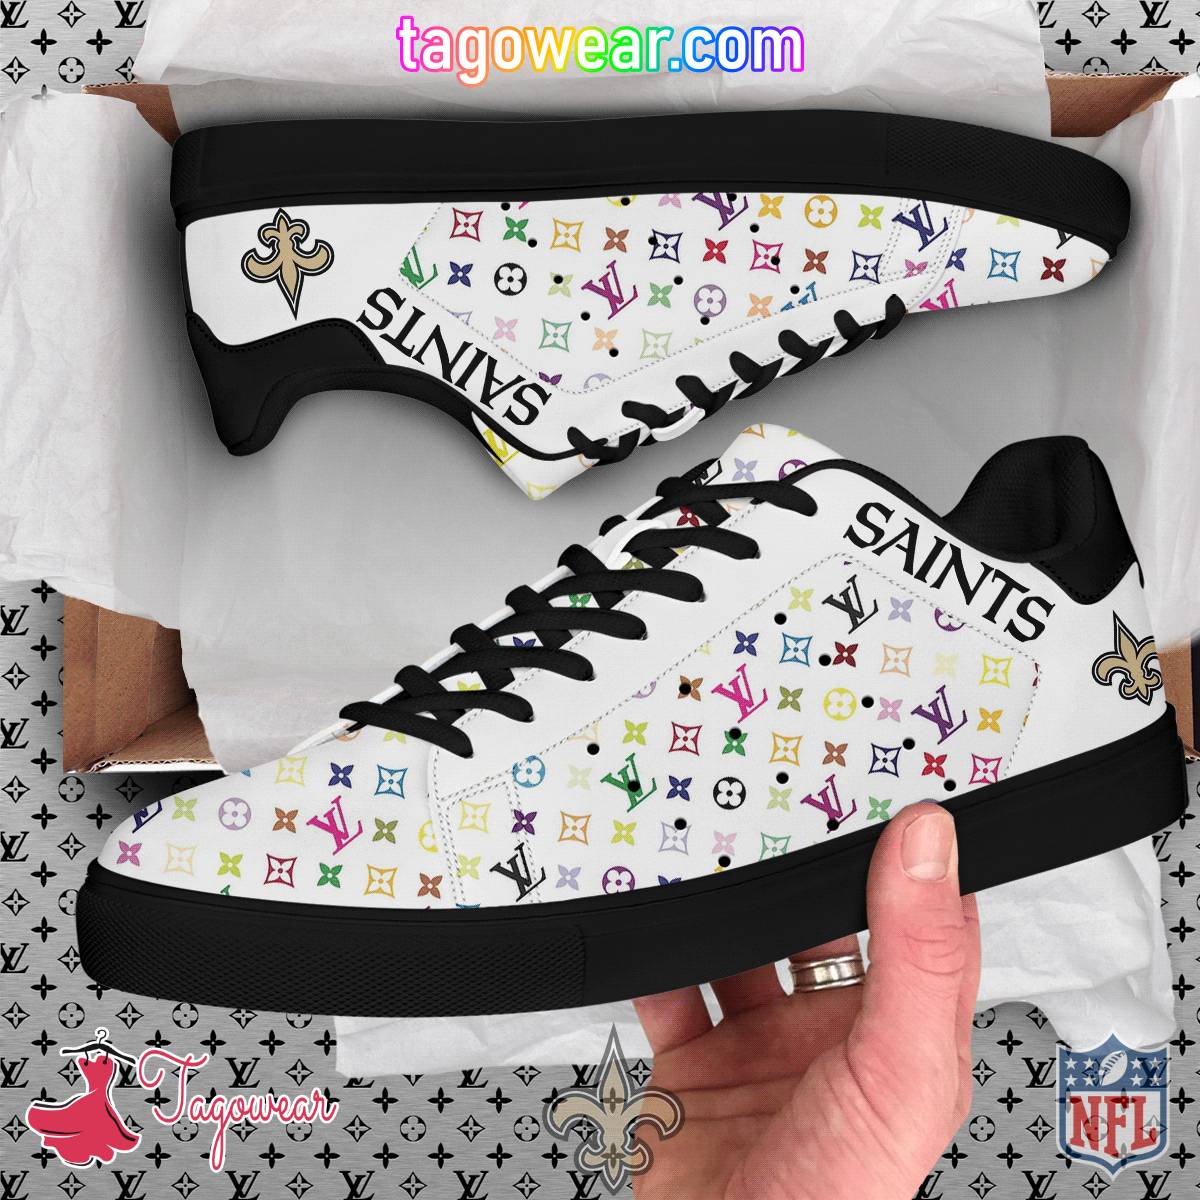 New Orleans Saints NFL Louis Vuitton Stan Smith Shoes a